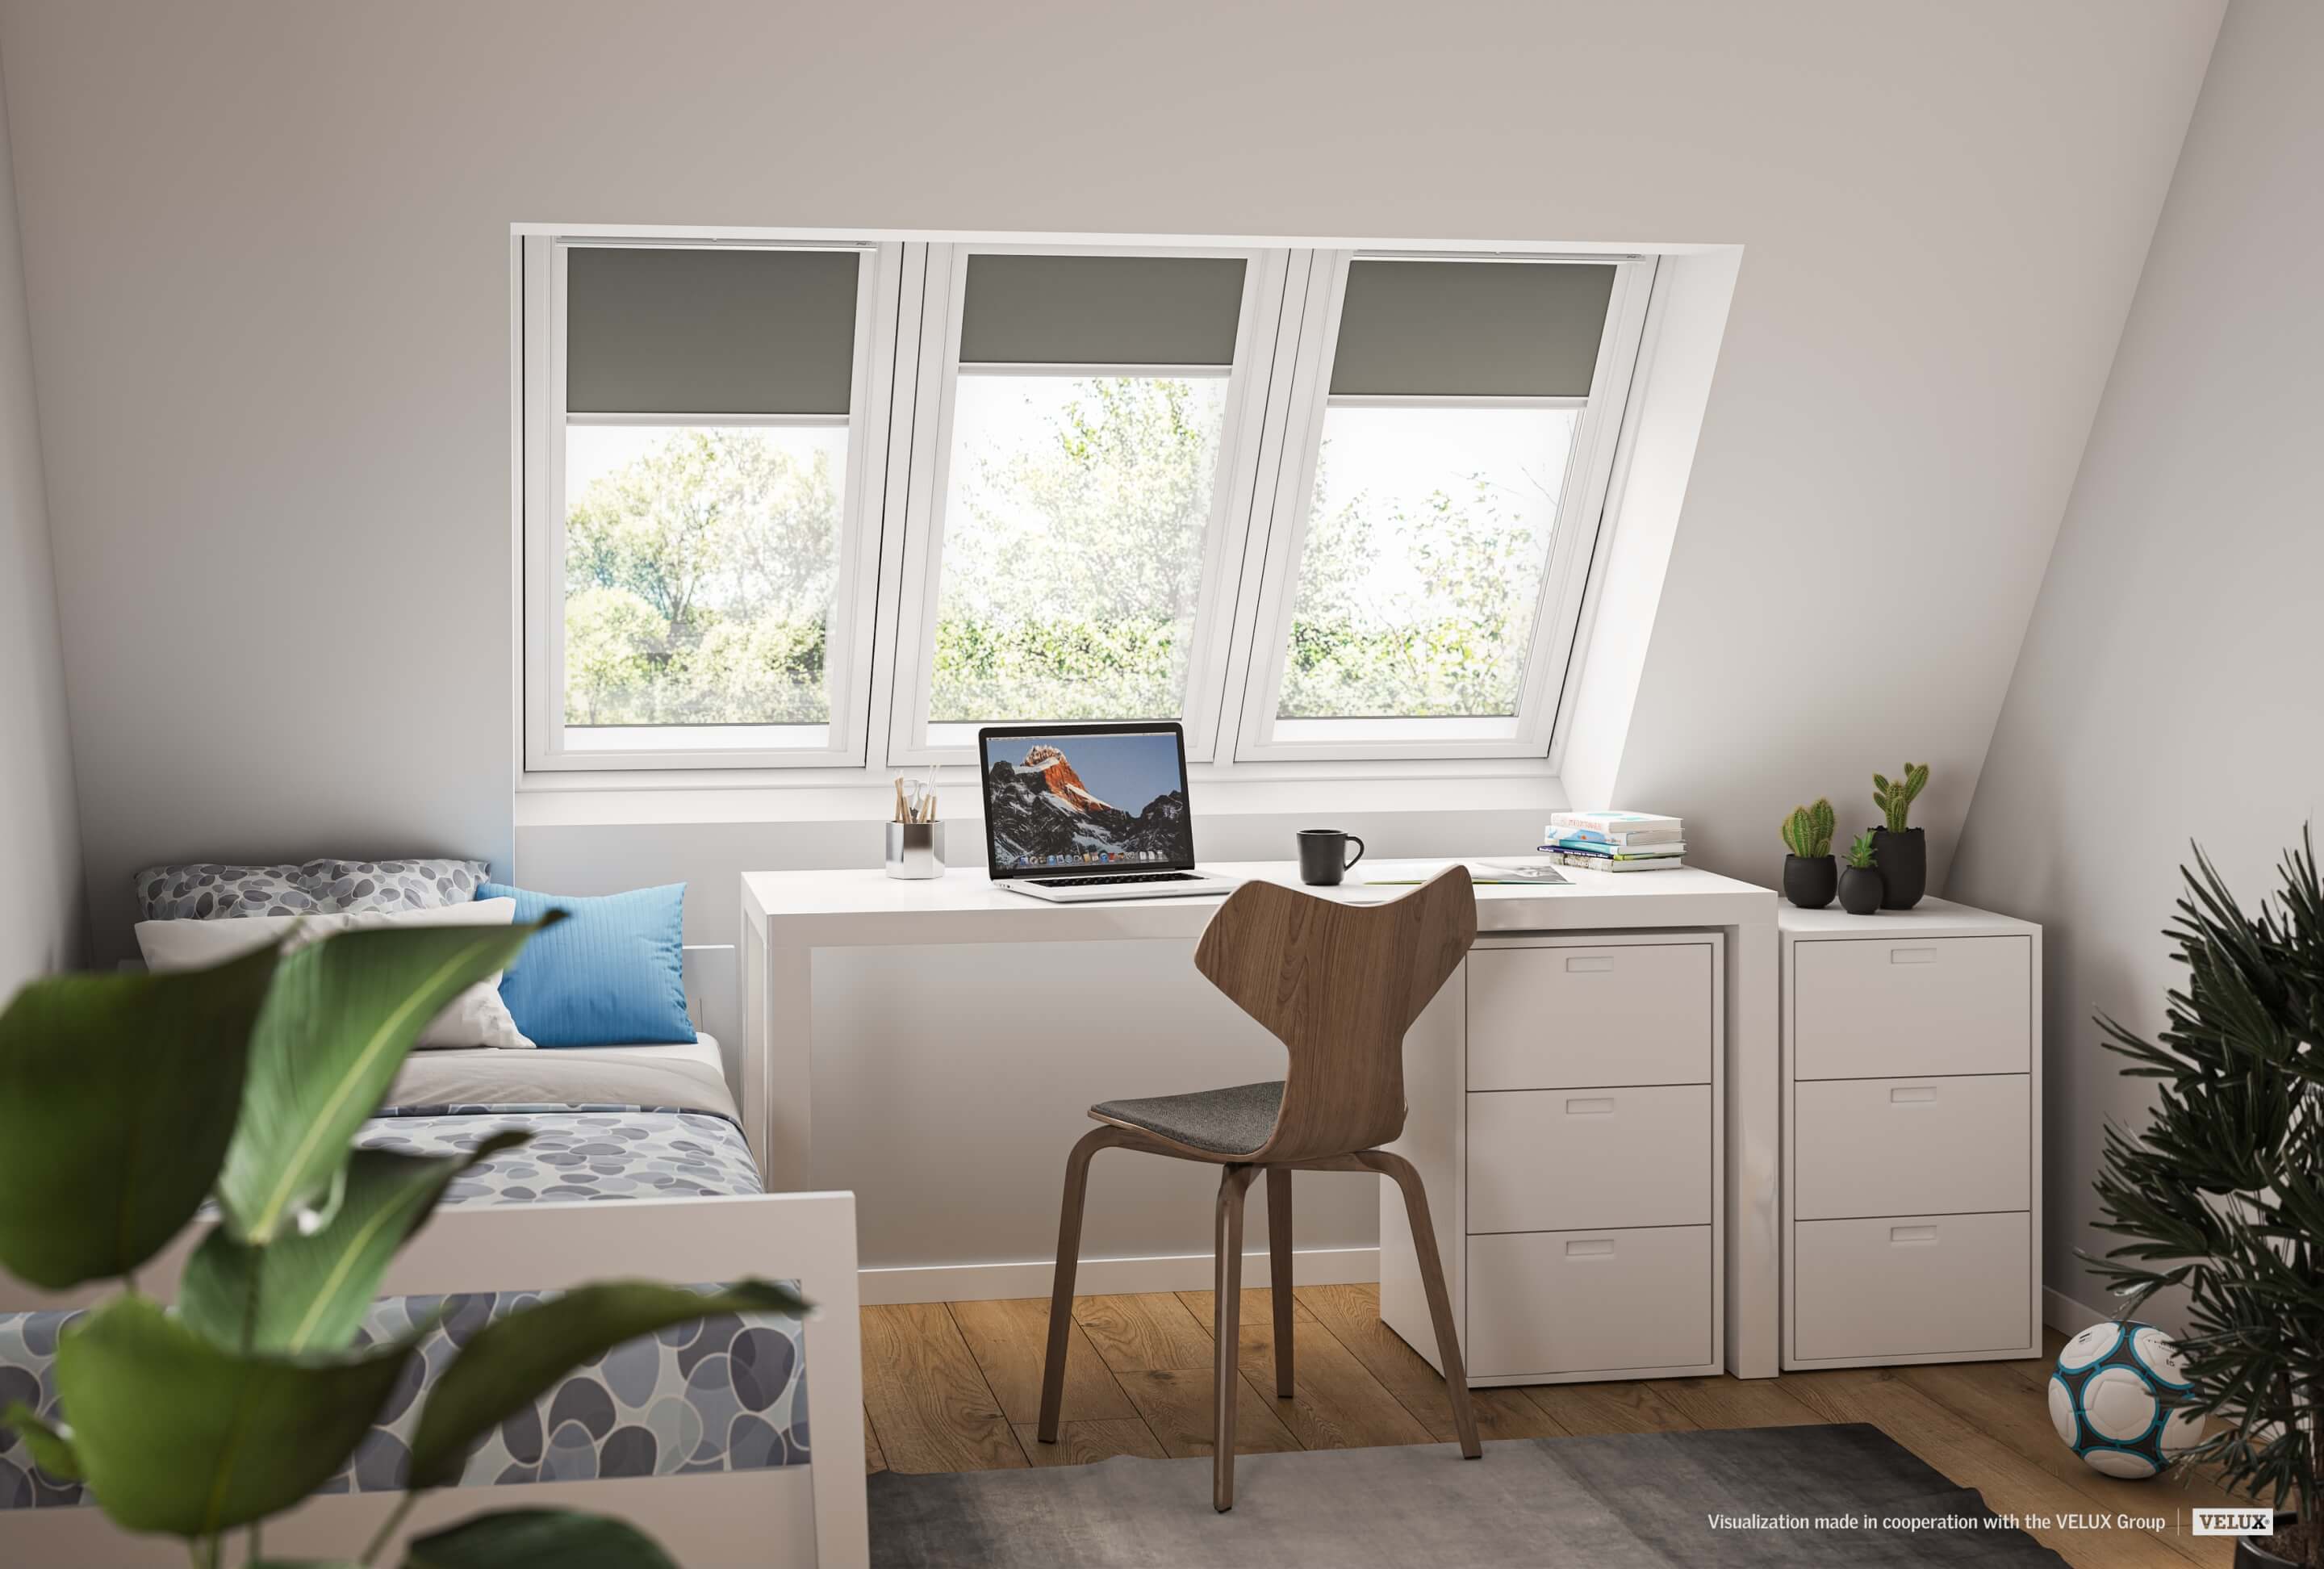 Home-Office-Ecke mit Schreibtisch, Stuhl und VELUX Dachflächenfenster mit Blick auf grüne Bäume.